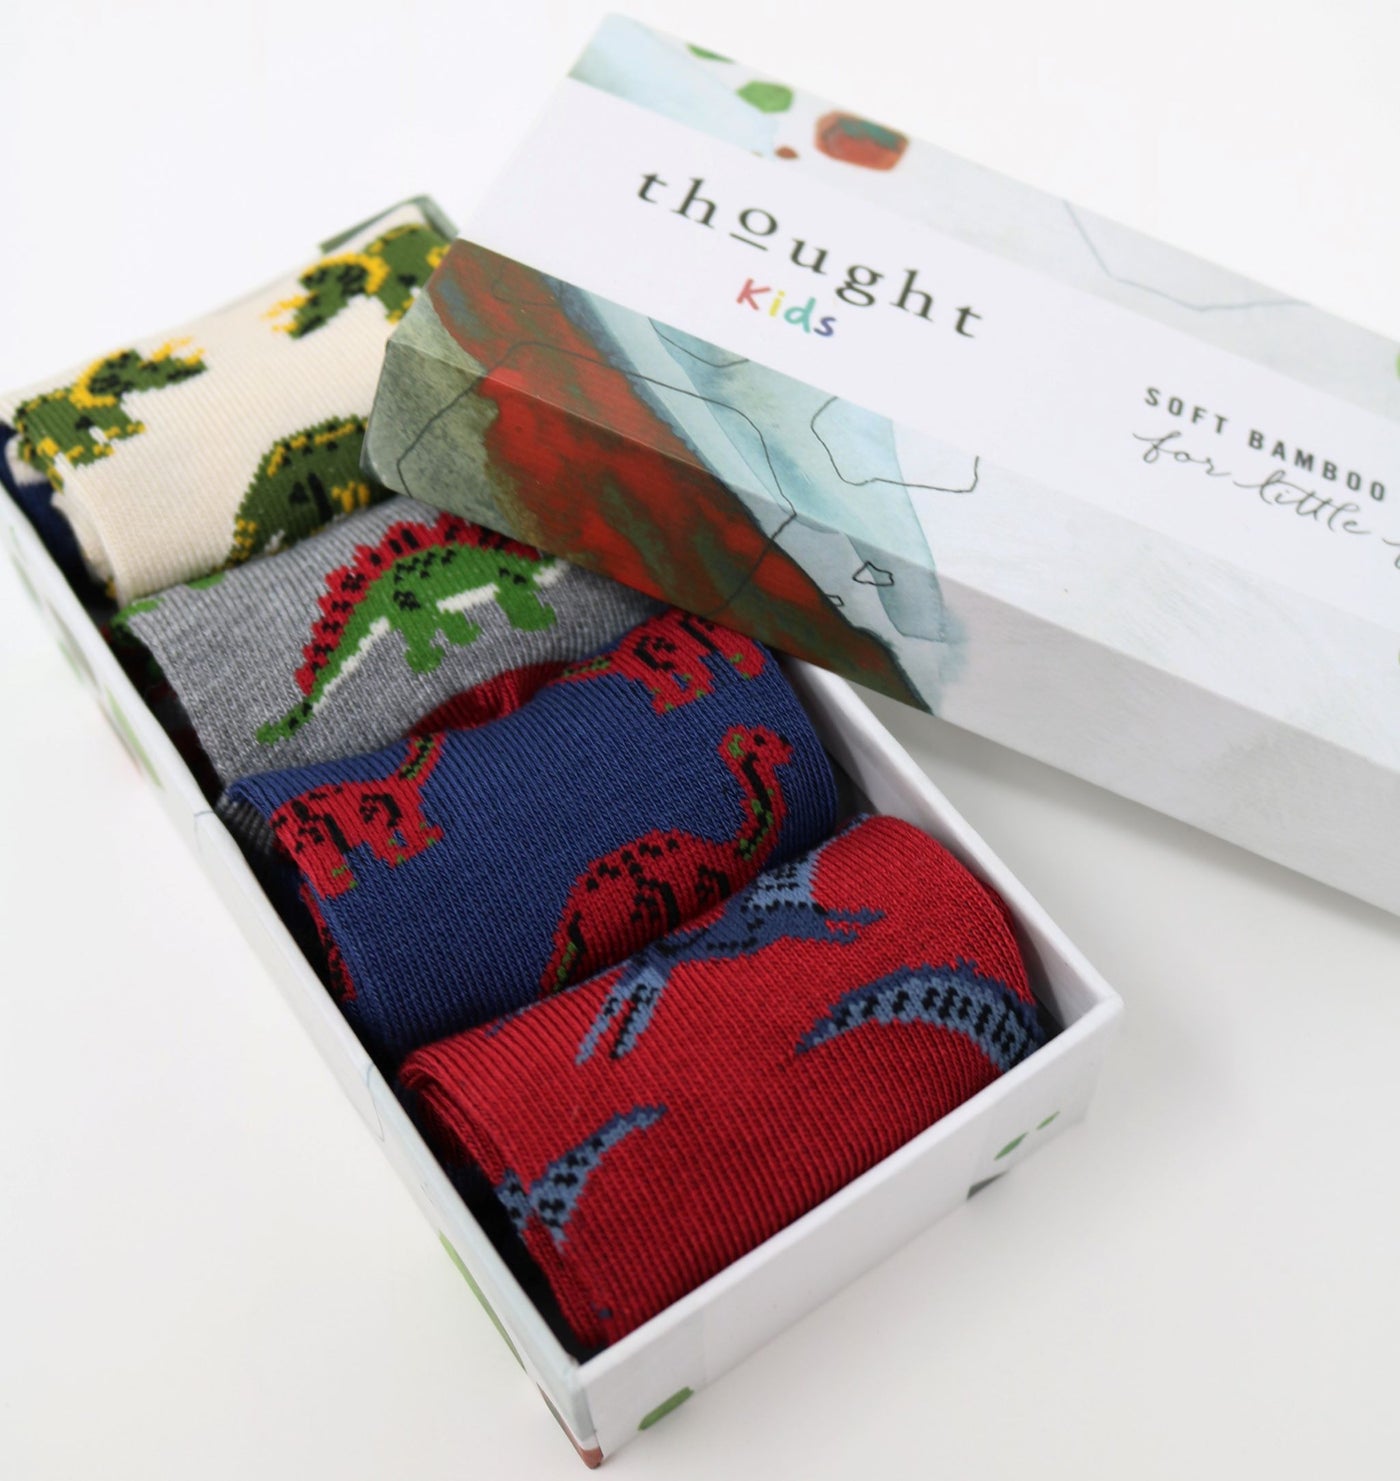 Gift Set of Baby Socks - Dinosaur